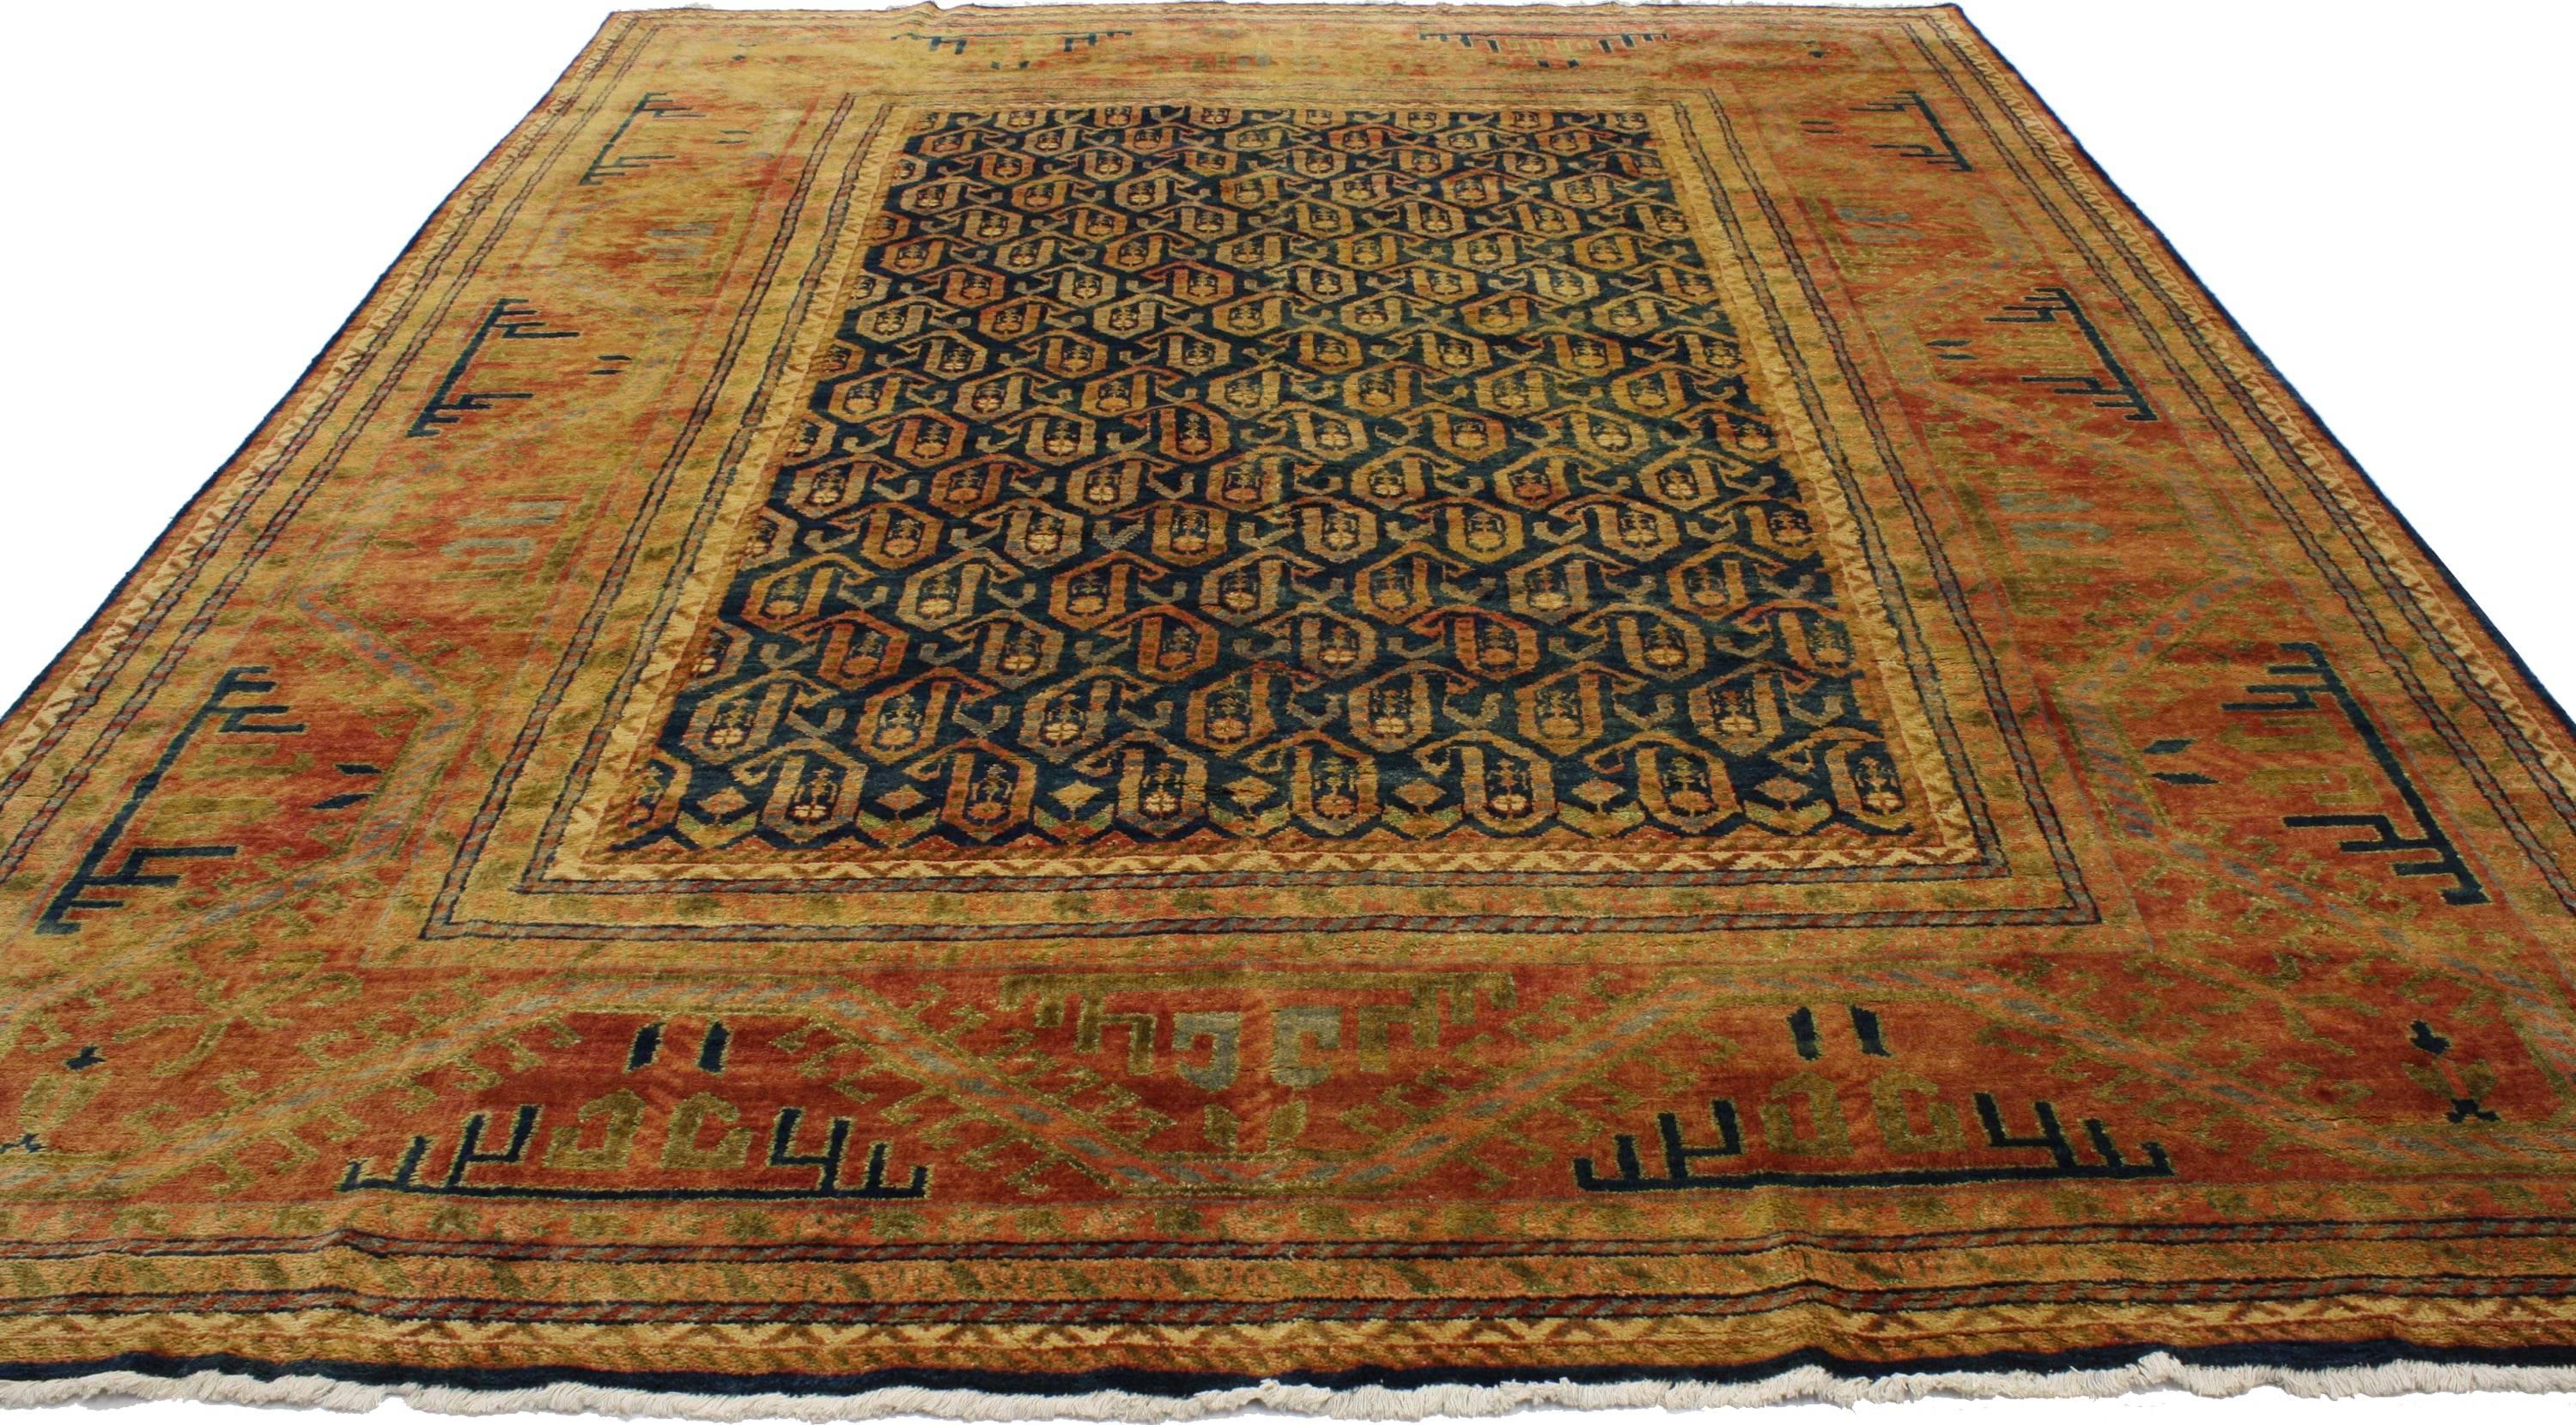 30193, tapis contemporain de style caucasien et kazakh. Ce tapis contemporain en laine nouée à la main, de style caucasien et kazakh, présente un motif floral boteh étalé sur un fond bleu encre abrasé. Le motif boteh, largement utilisé, est censé